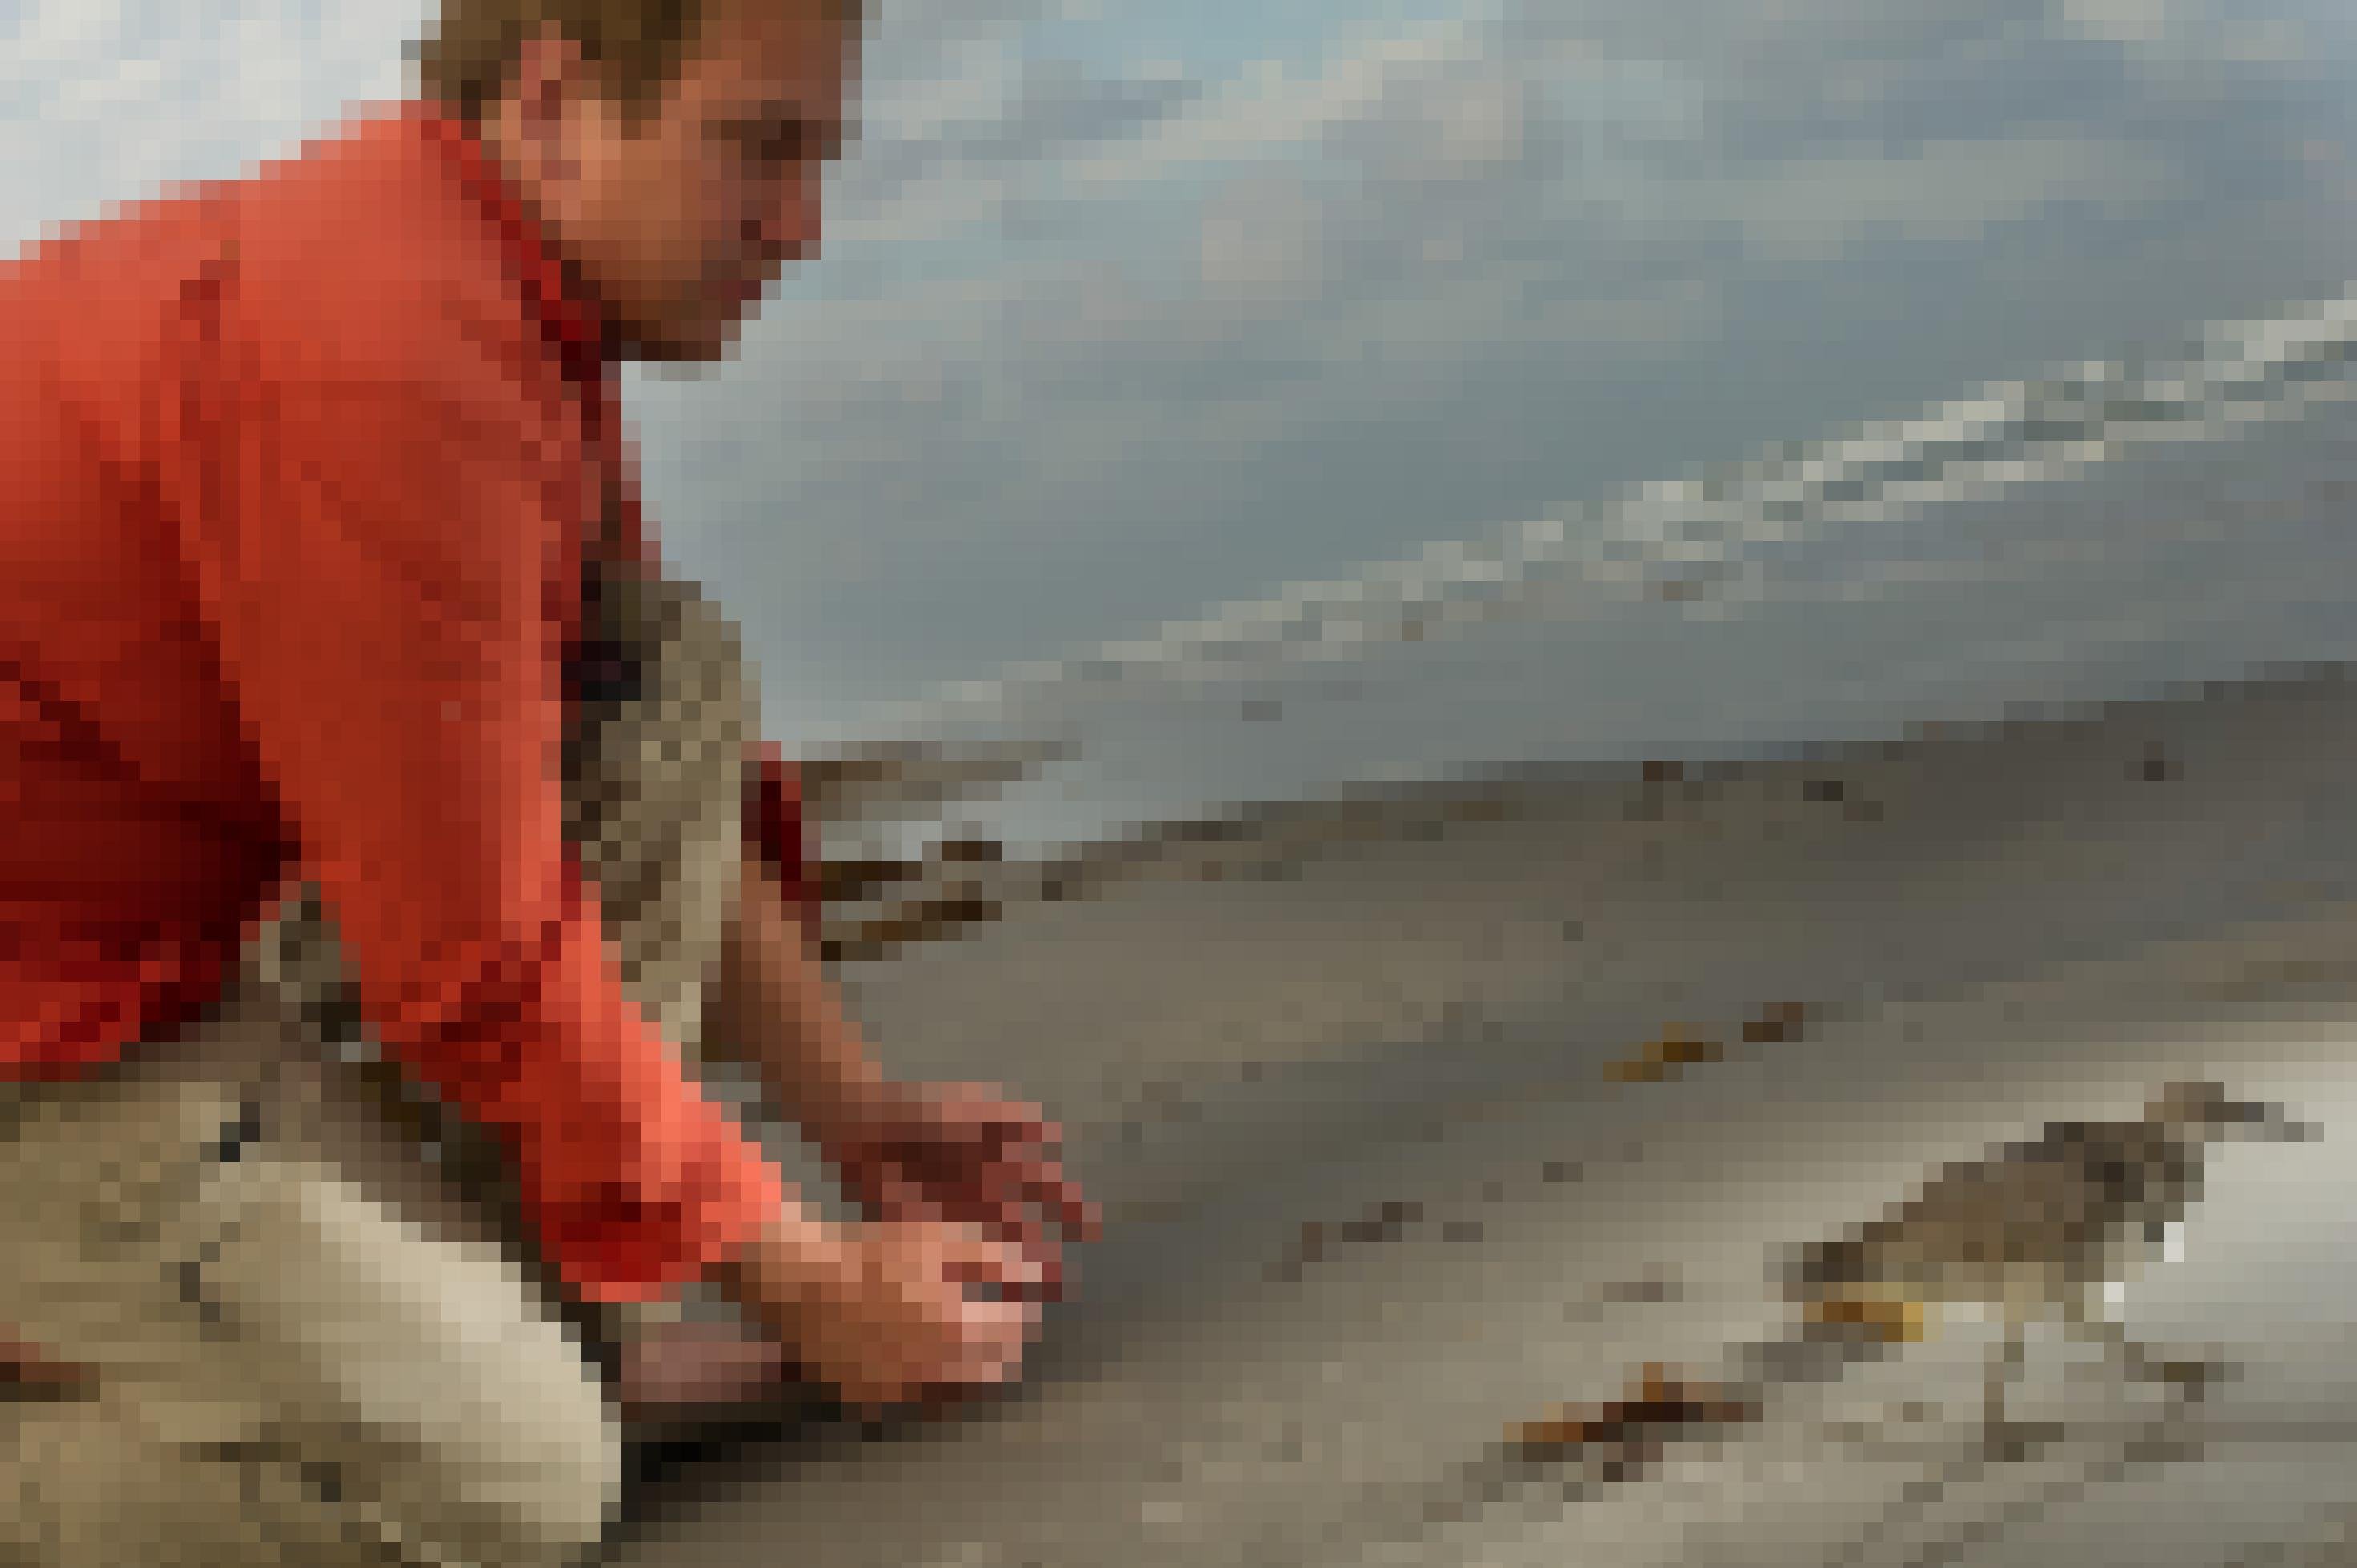 Der Forscher Peter Marra hockt am Strand und schaut einem Knutt hinterher, aus dessen Rückenfedern eine Antenne ragt.